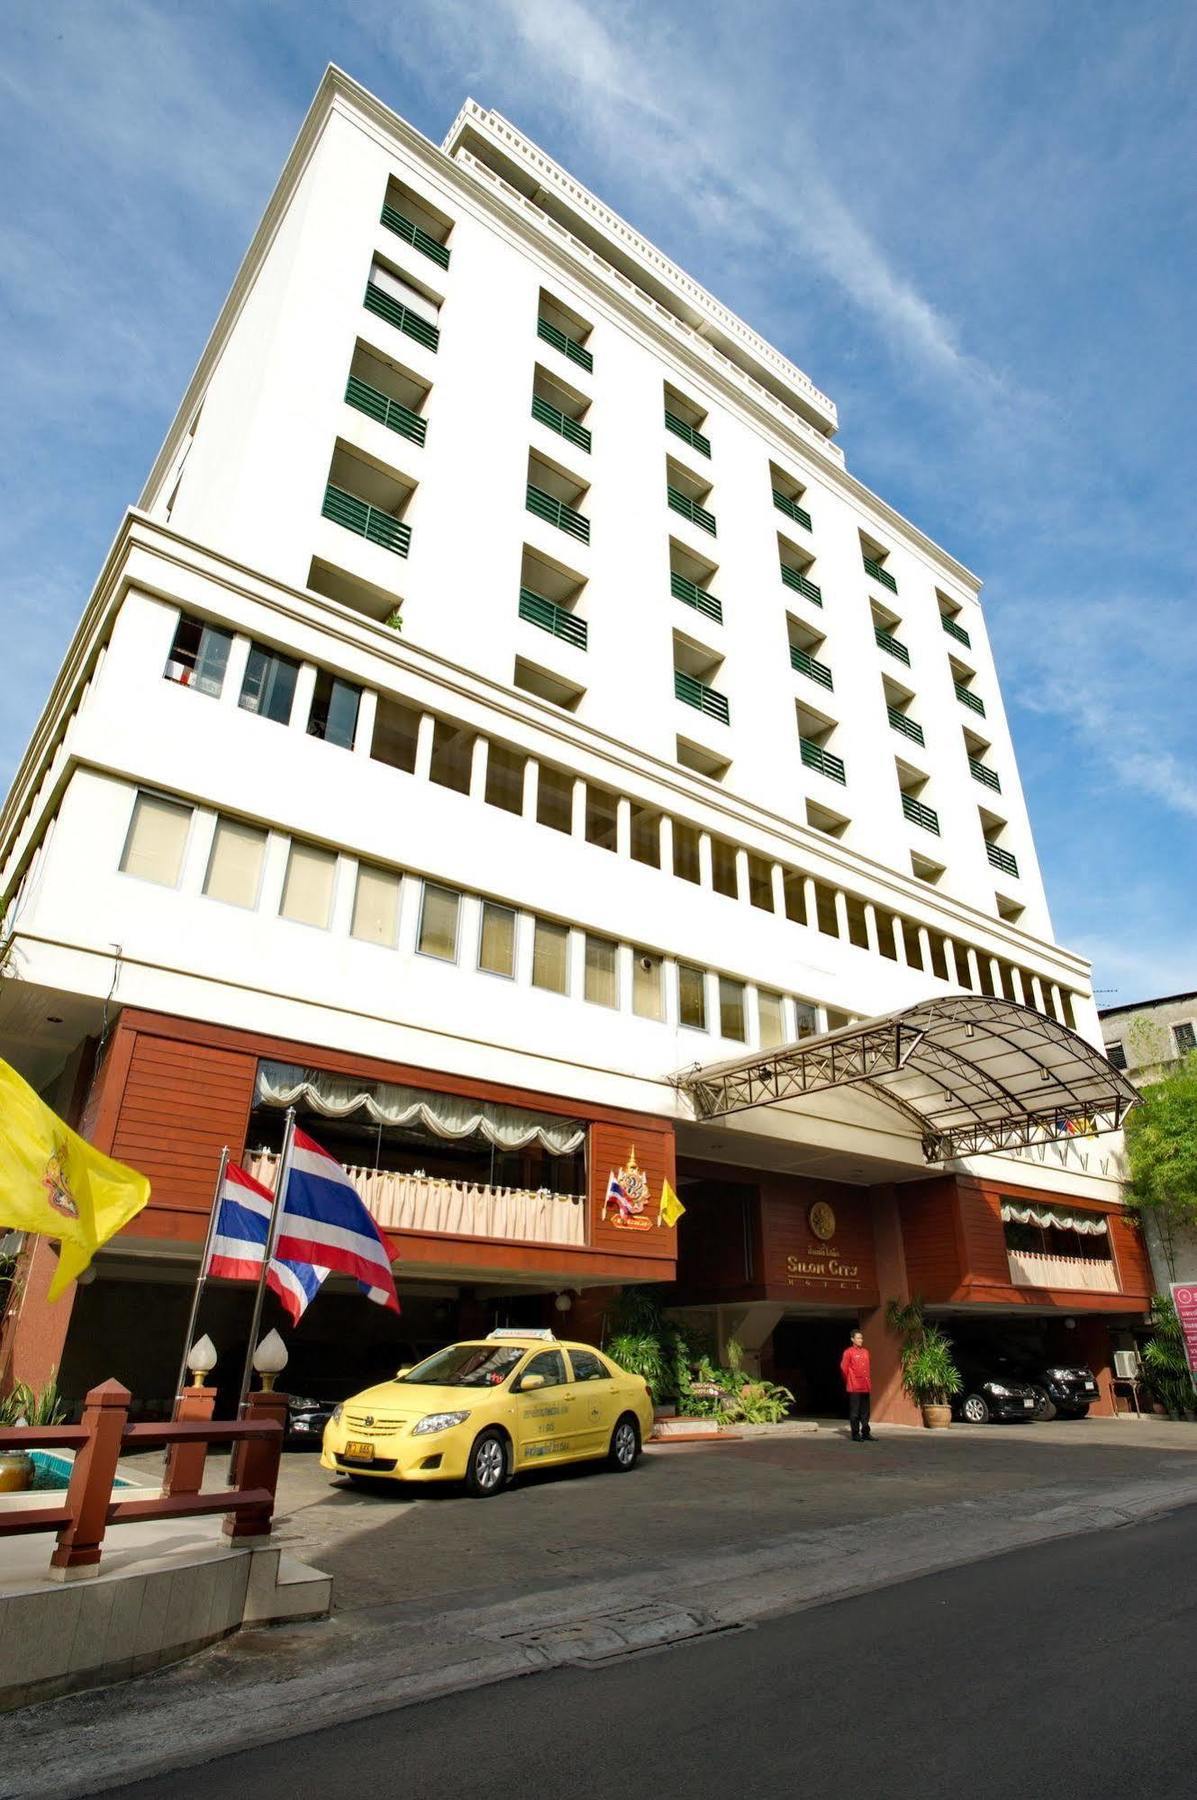 Silom City Hotel Bangkok Bagian luar foto